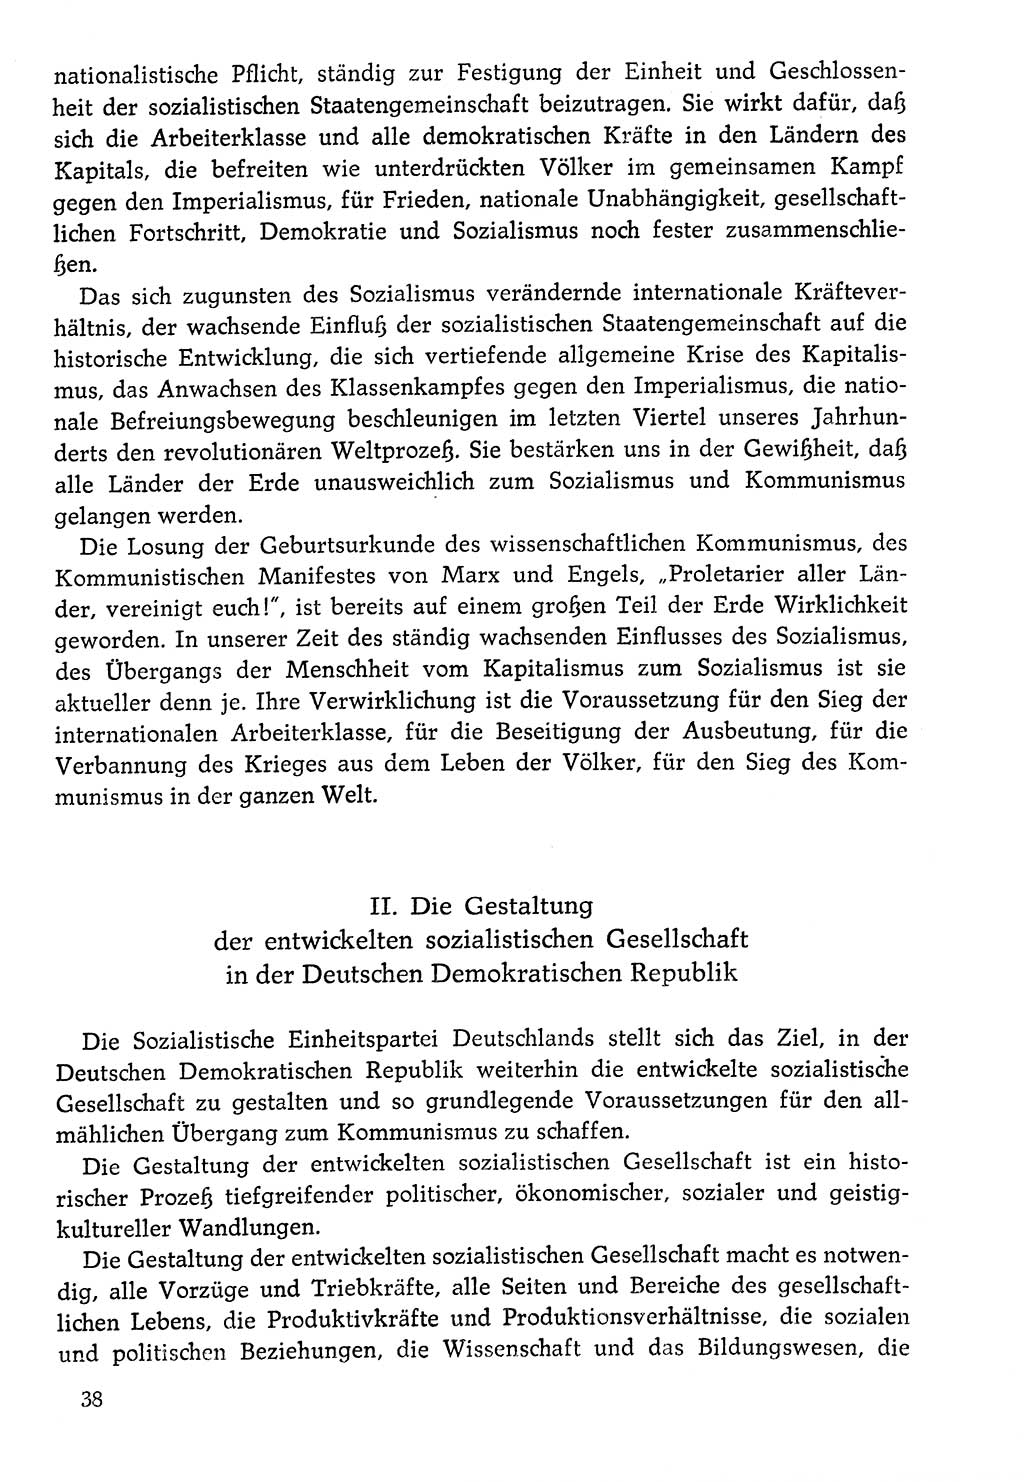 Dokumente der Sozialistischen Einheitspartei Deutschlands (SED) [Deutsche Demokratische Republik (DDR)] 1976-1977, Seite 38 (Dok. SED DDR 1976-1977, S. 38)